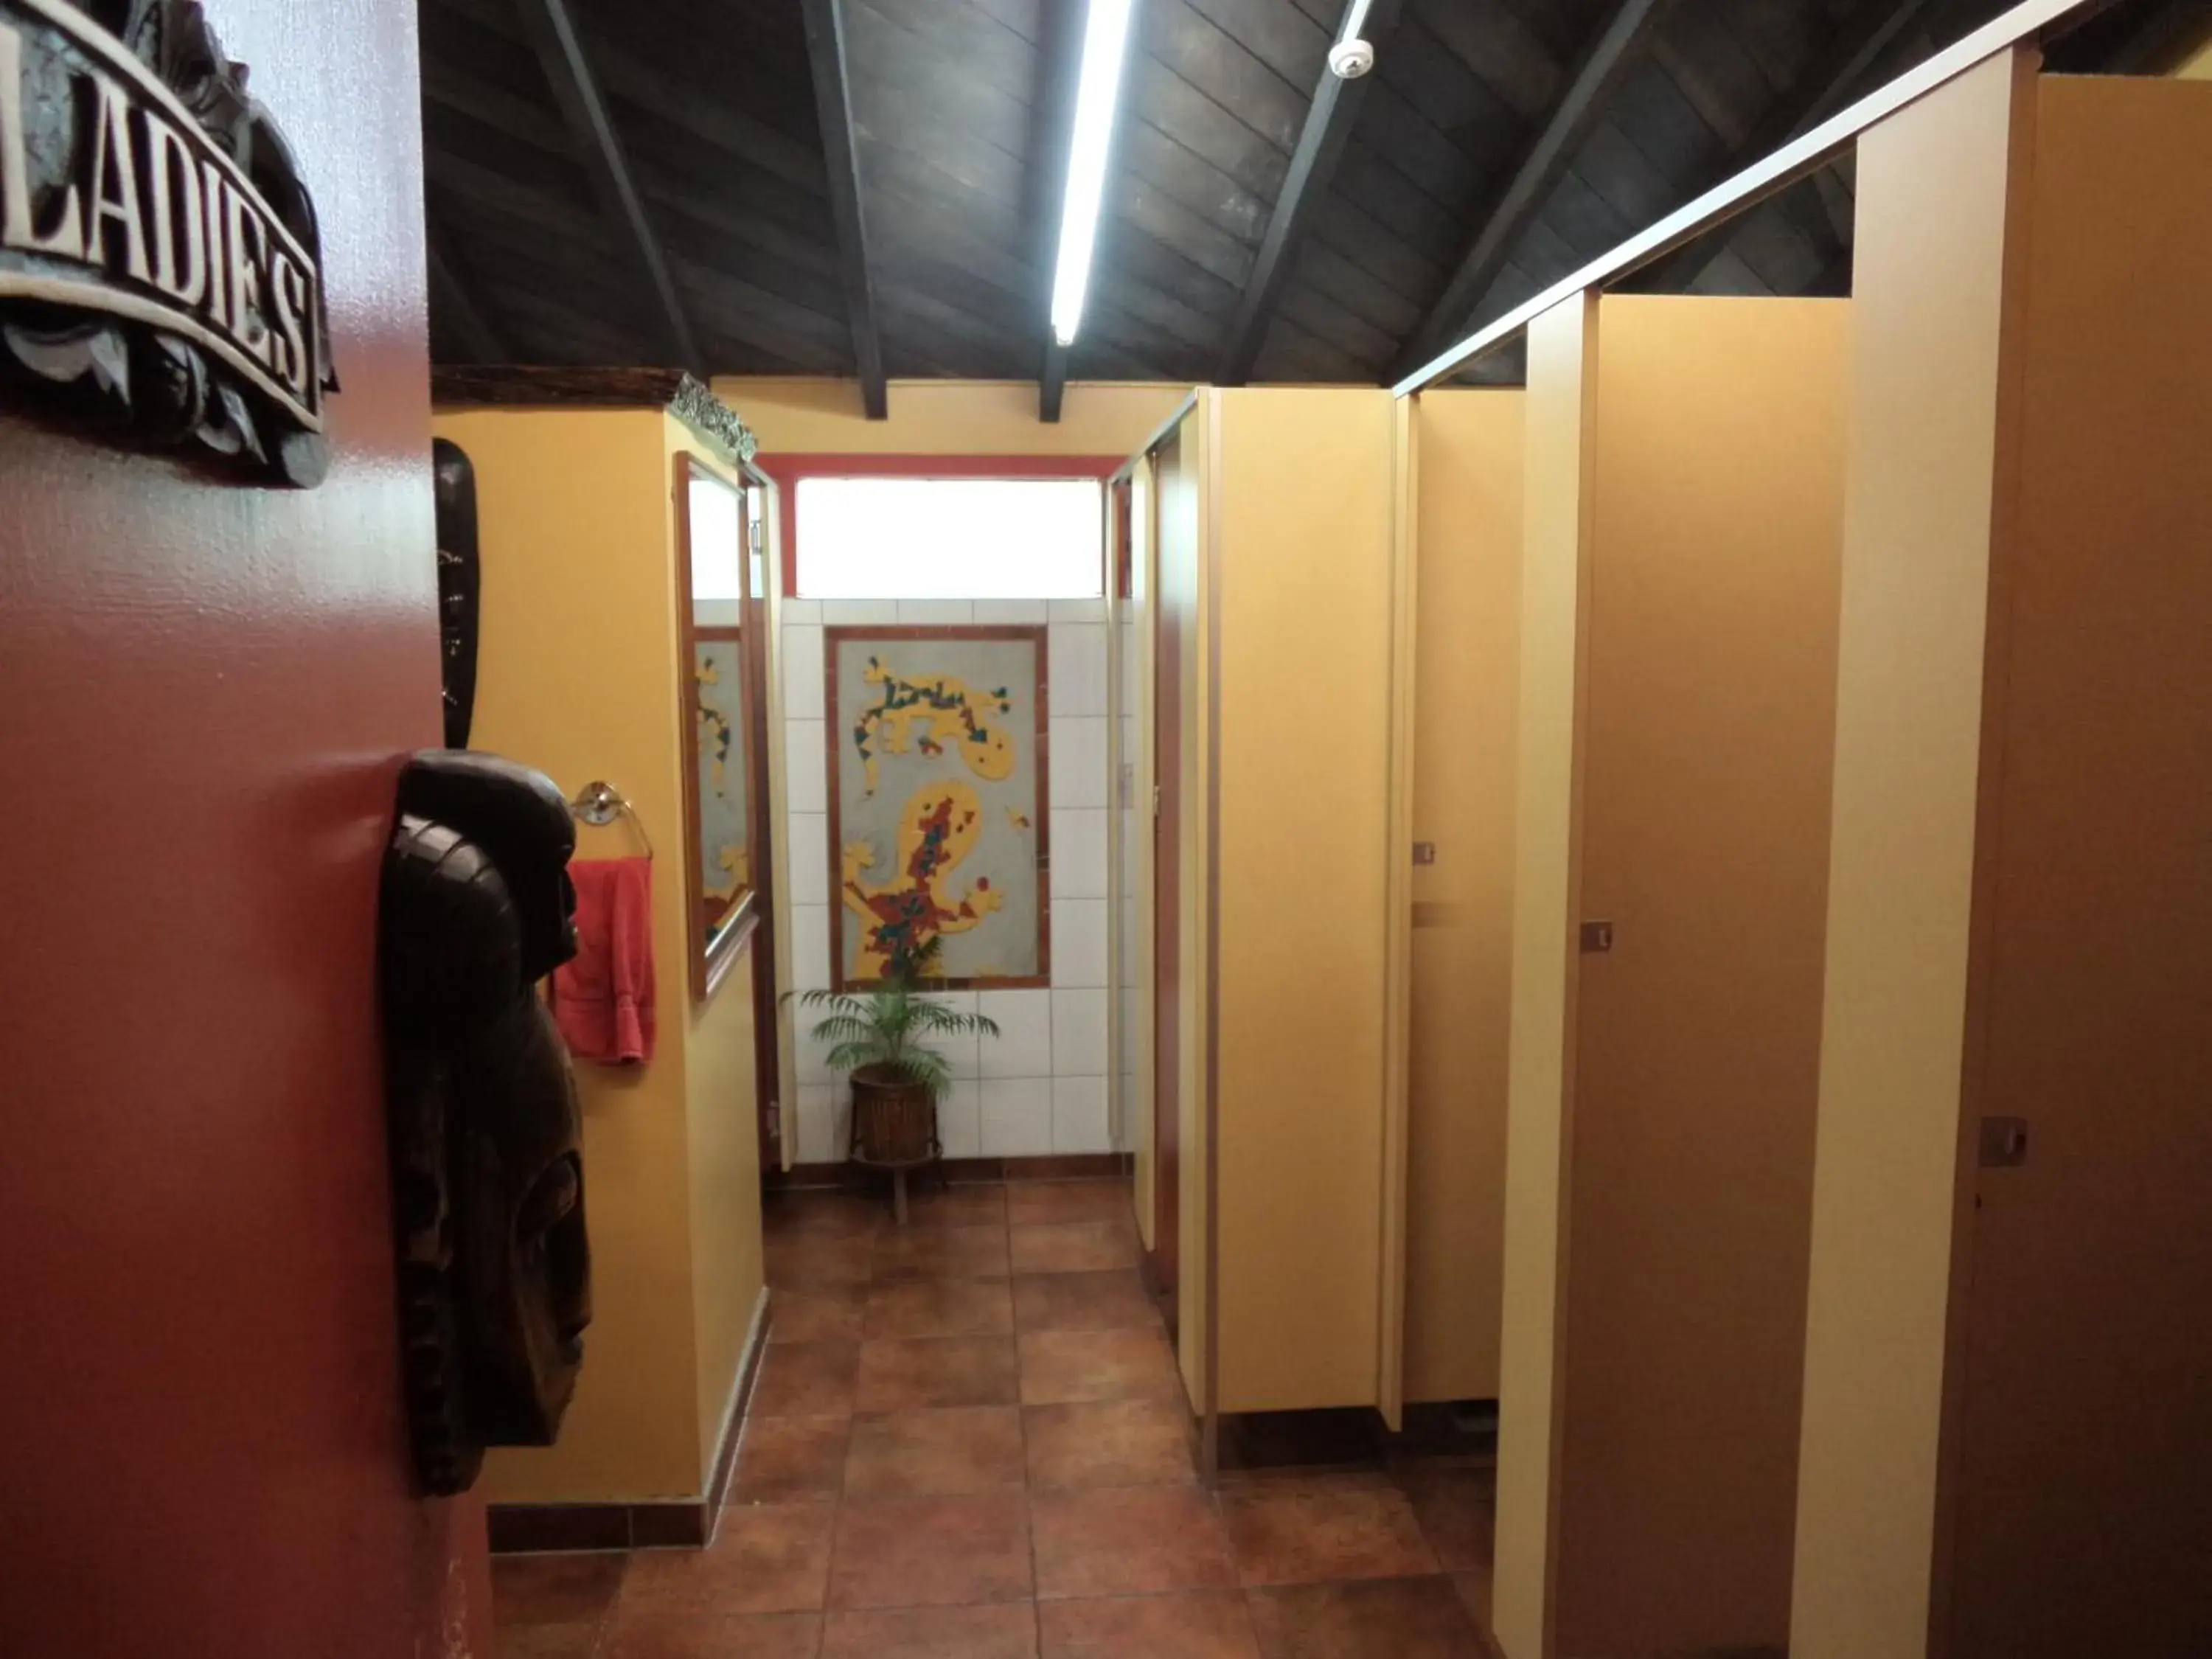 Bathroom in Global Village Travellers Lodge